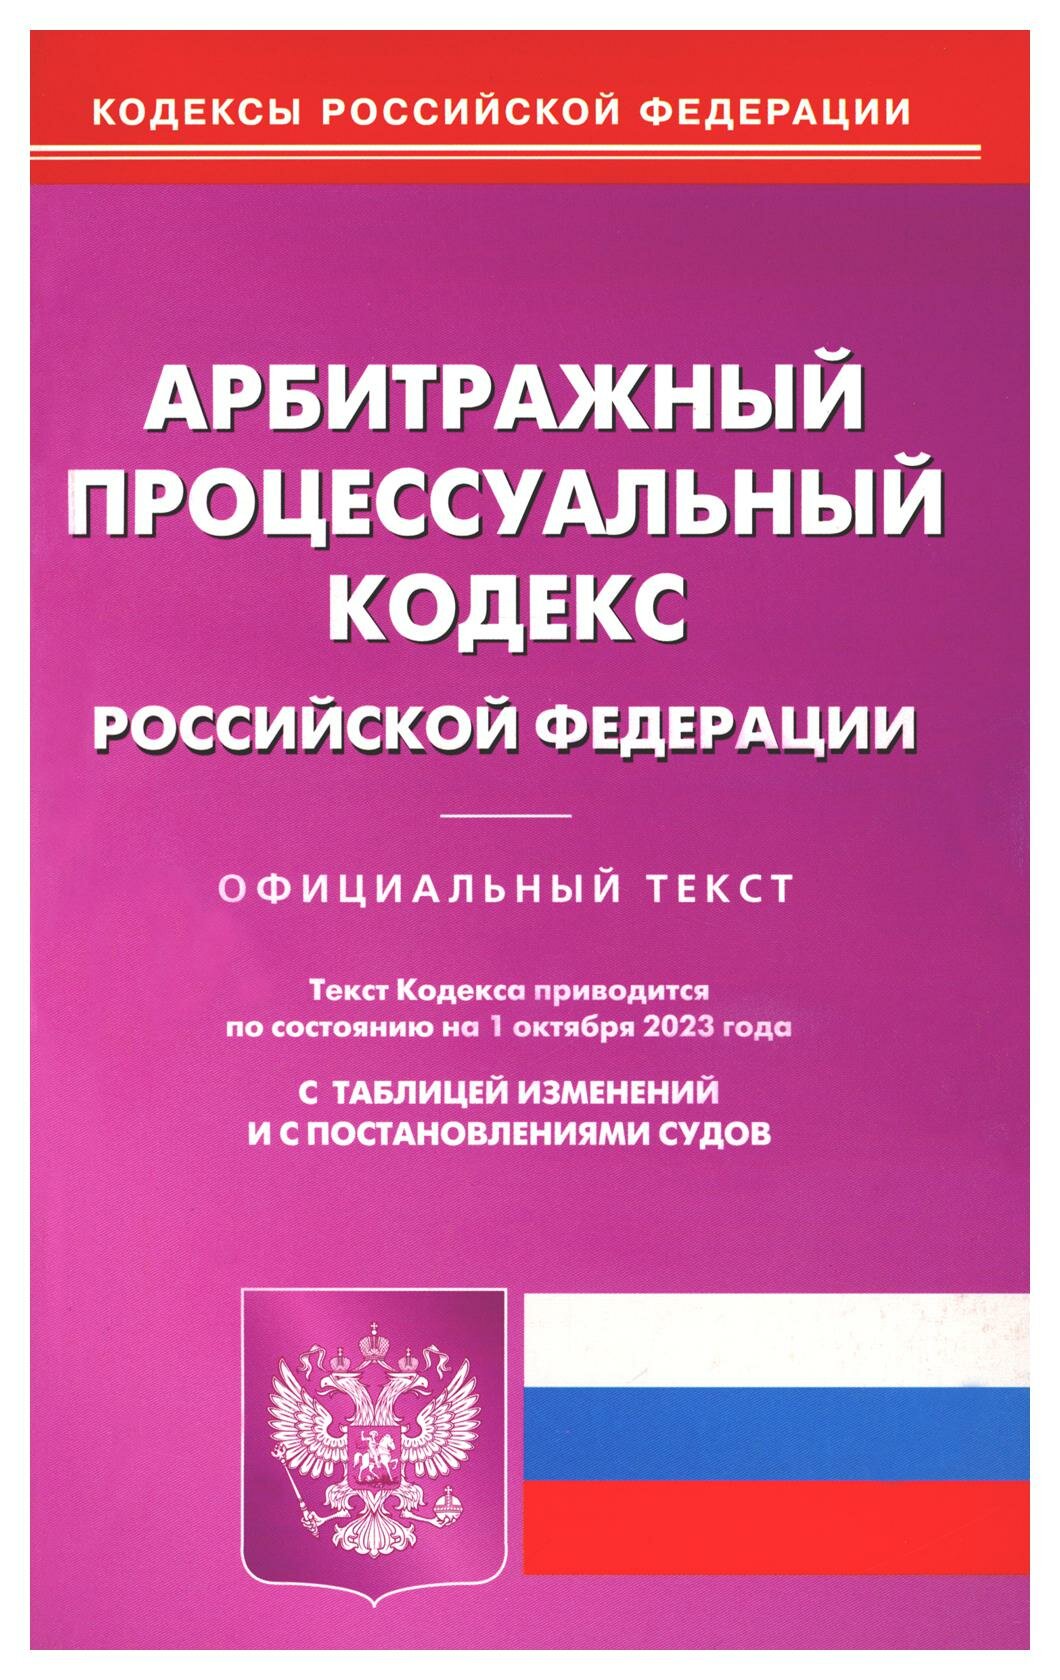 Арбитражный процессуальный кодекс Российской Федерации по состоянию на 01 октября 2023 г - фото №1